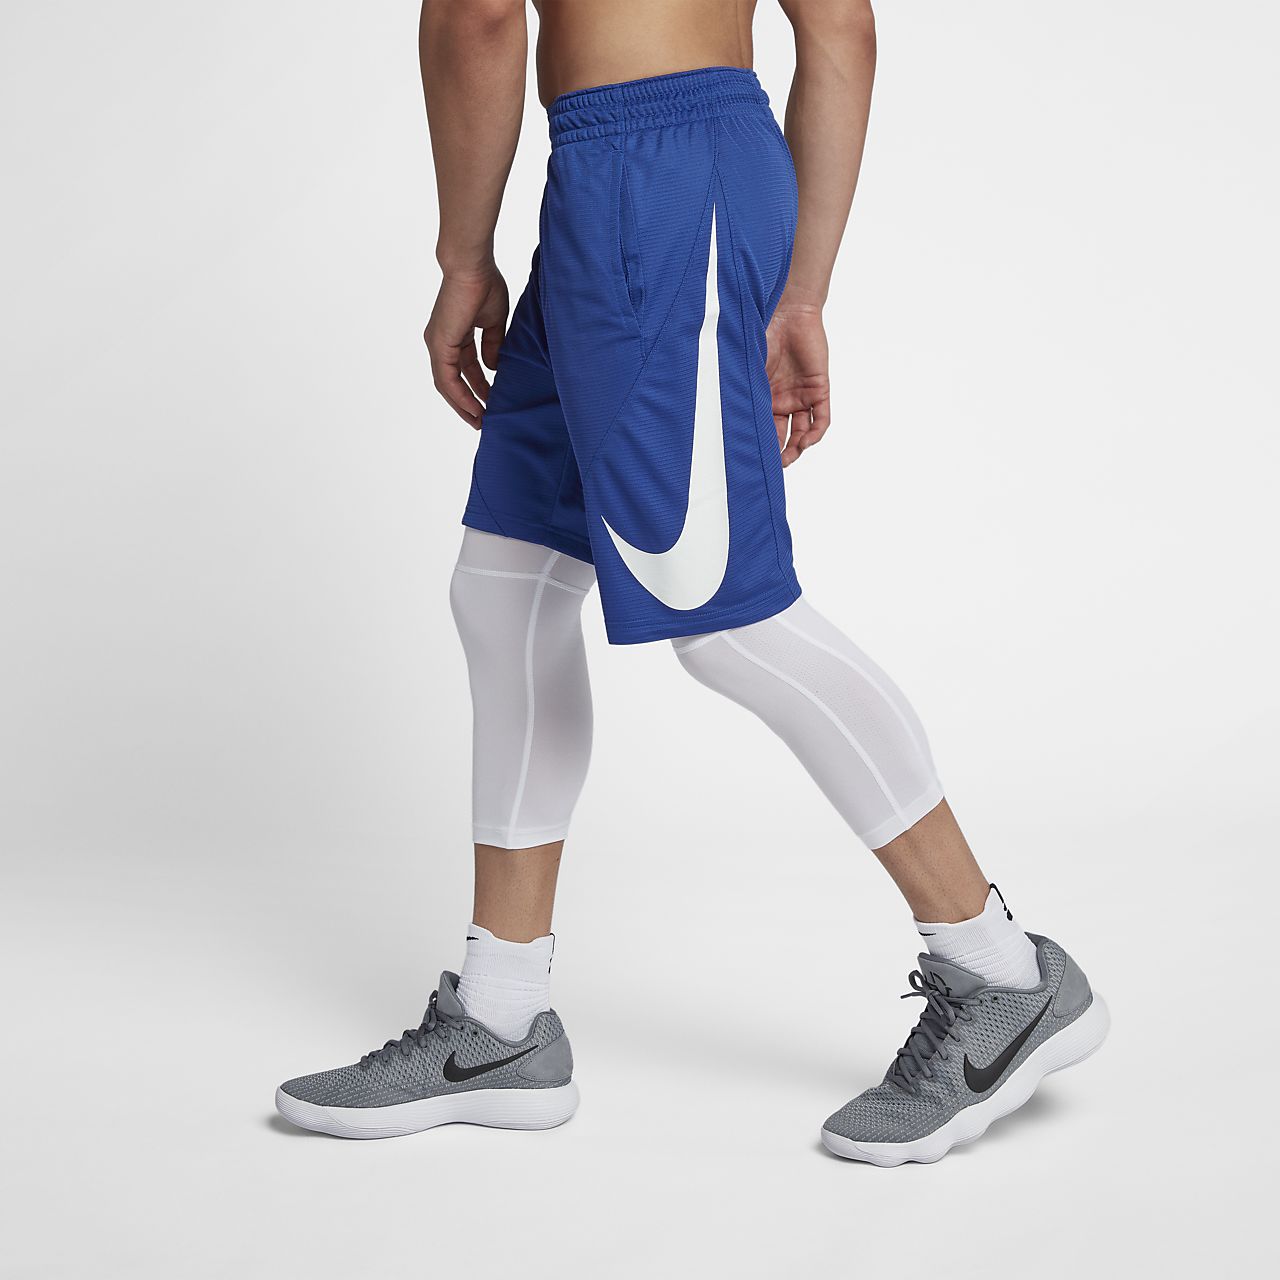 nike 9 inch basketball shorts